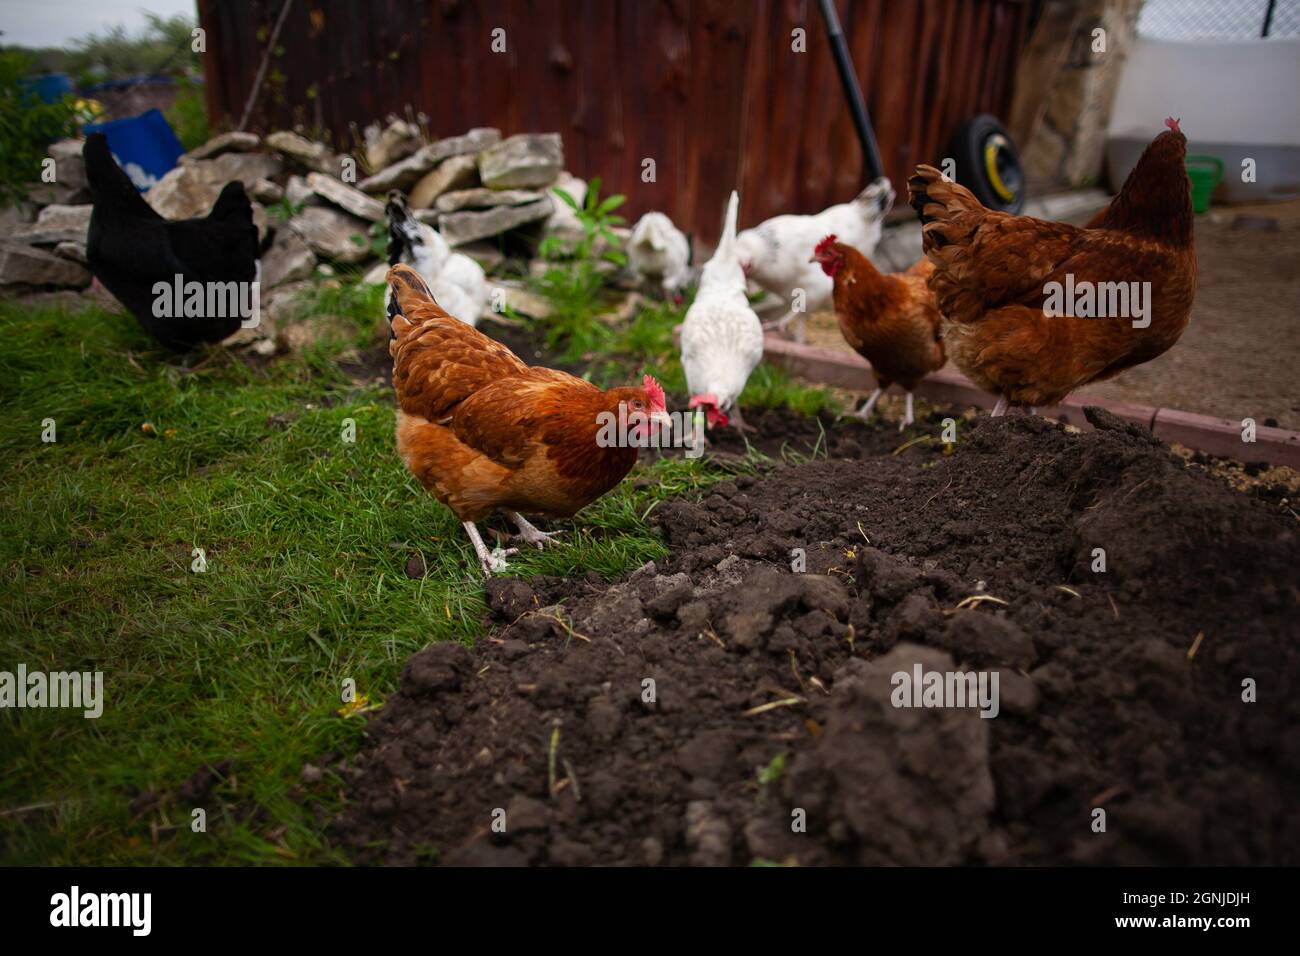 Foto schließen von Hühnern, die sich auf dem Boden ernähren, auf der Suche nach etwas mit einigen Werkzeugen, Holzgebäuden und Steinen im Hintergrund Stockfoto